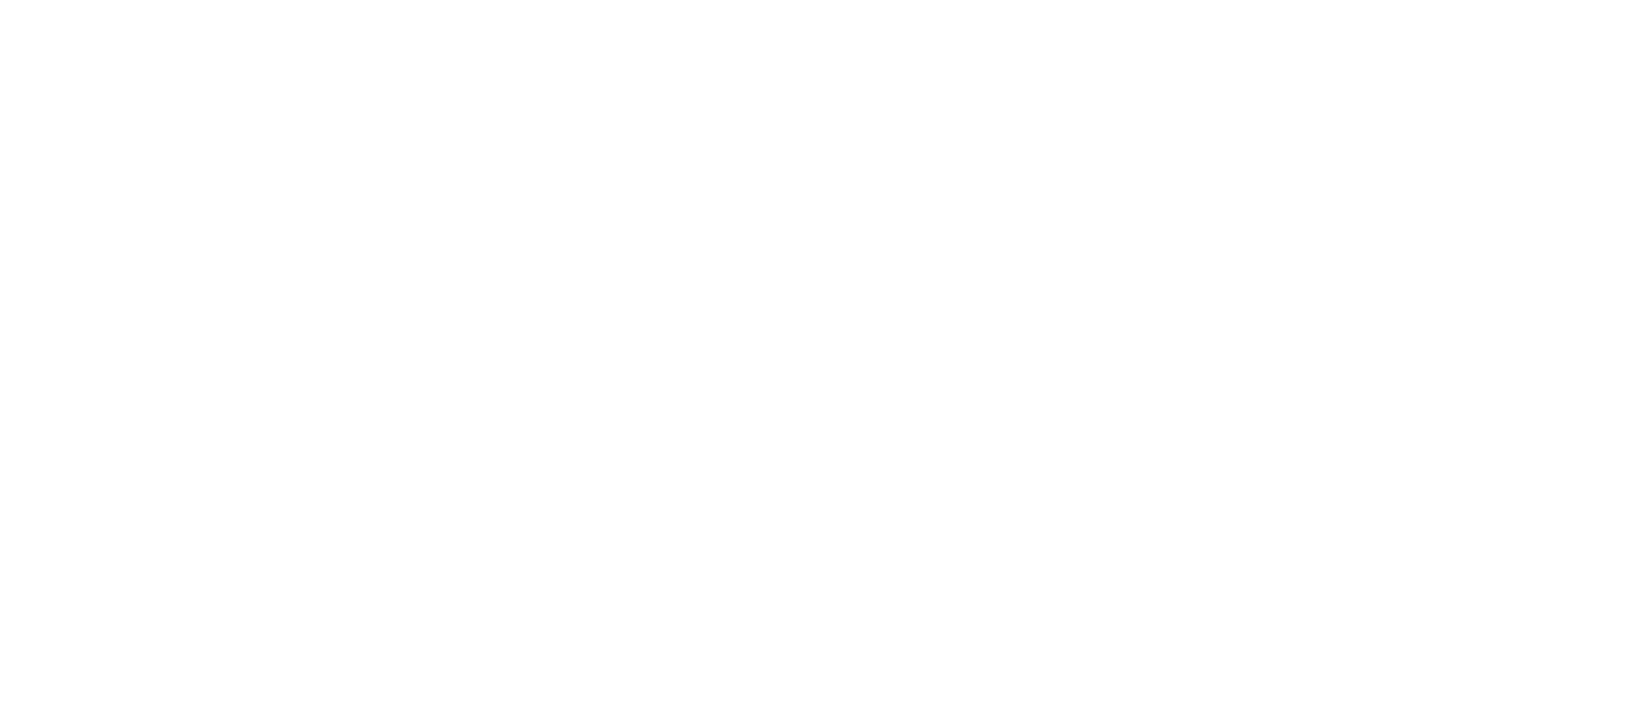 Торцевая заглушка Flexy TOREC GIPS LINE 50 IN для профилей Flexy: размер, вид, применение, способ монтажа в Беларуси (РБ)